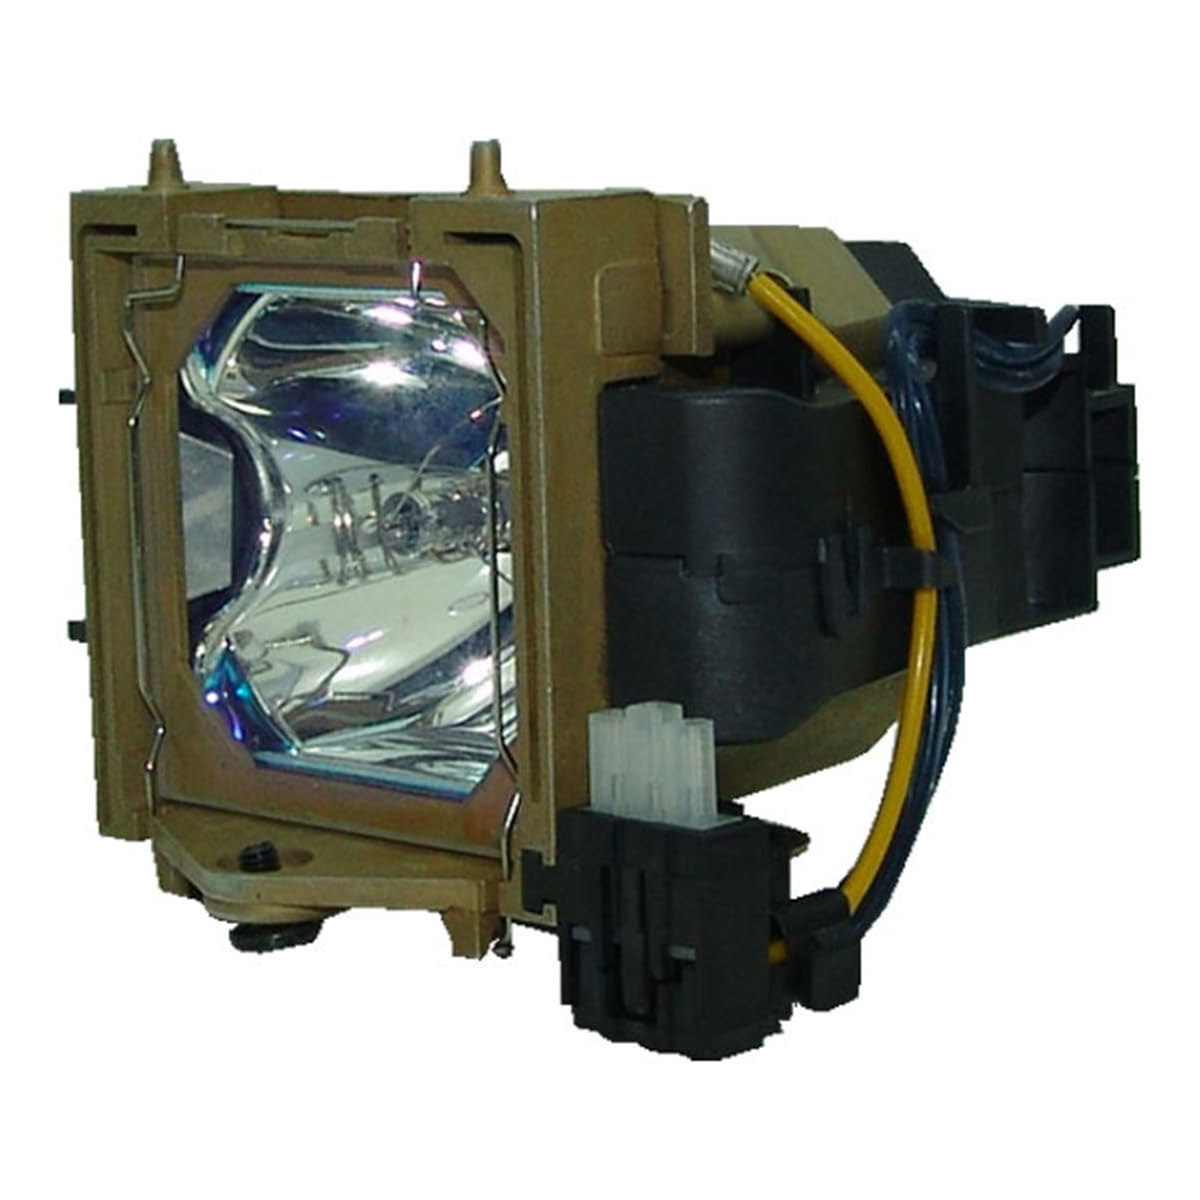 Replacement Projector lamp SP-LAMP-017 For Infocus LP540 L P640 L S5000 SP5000